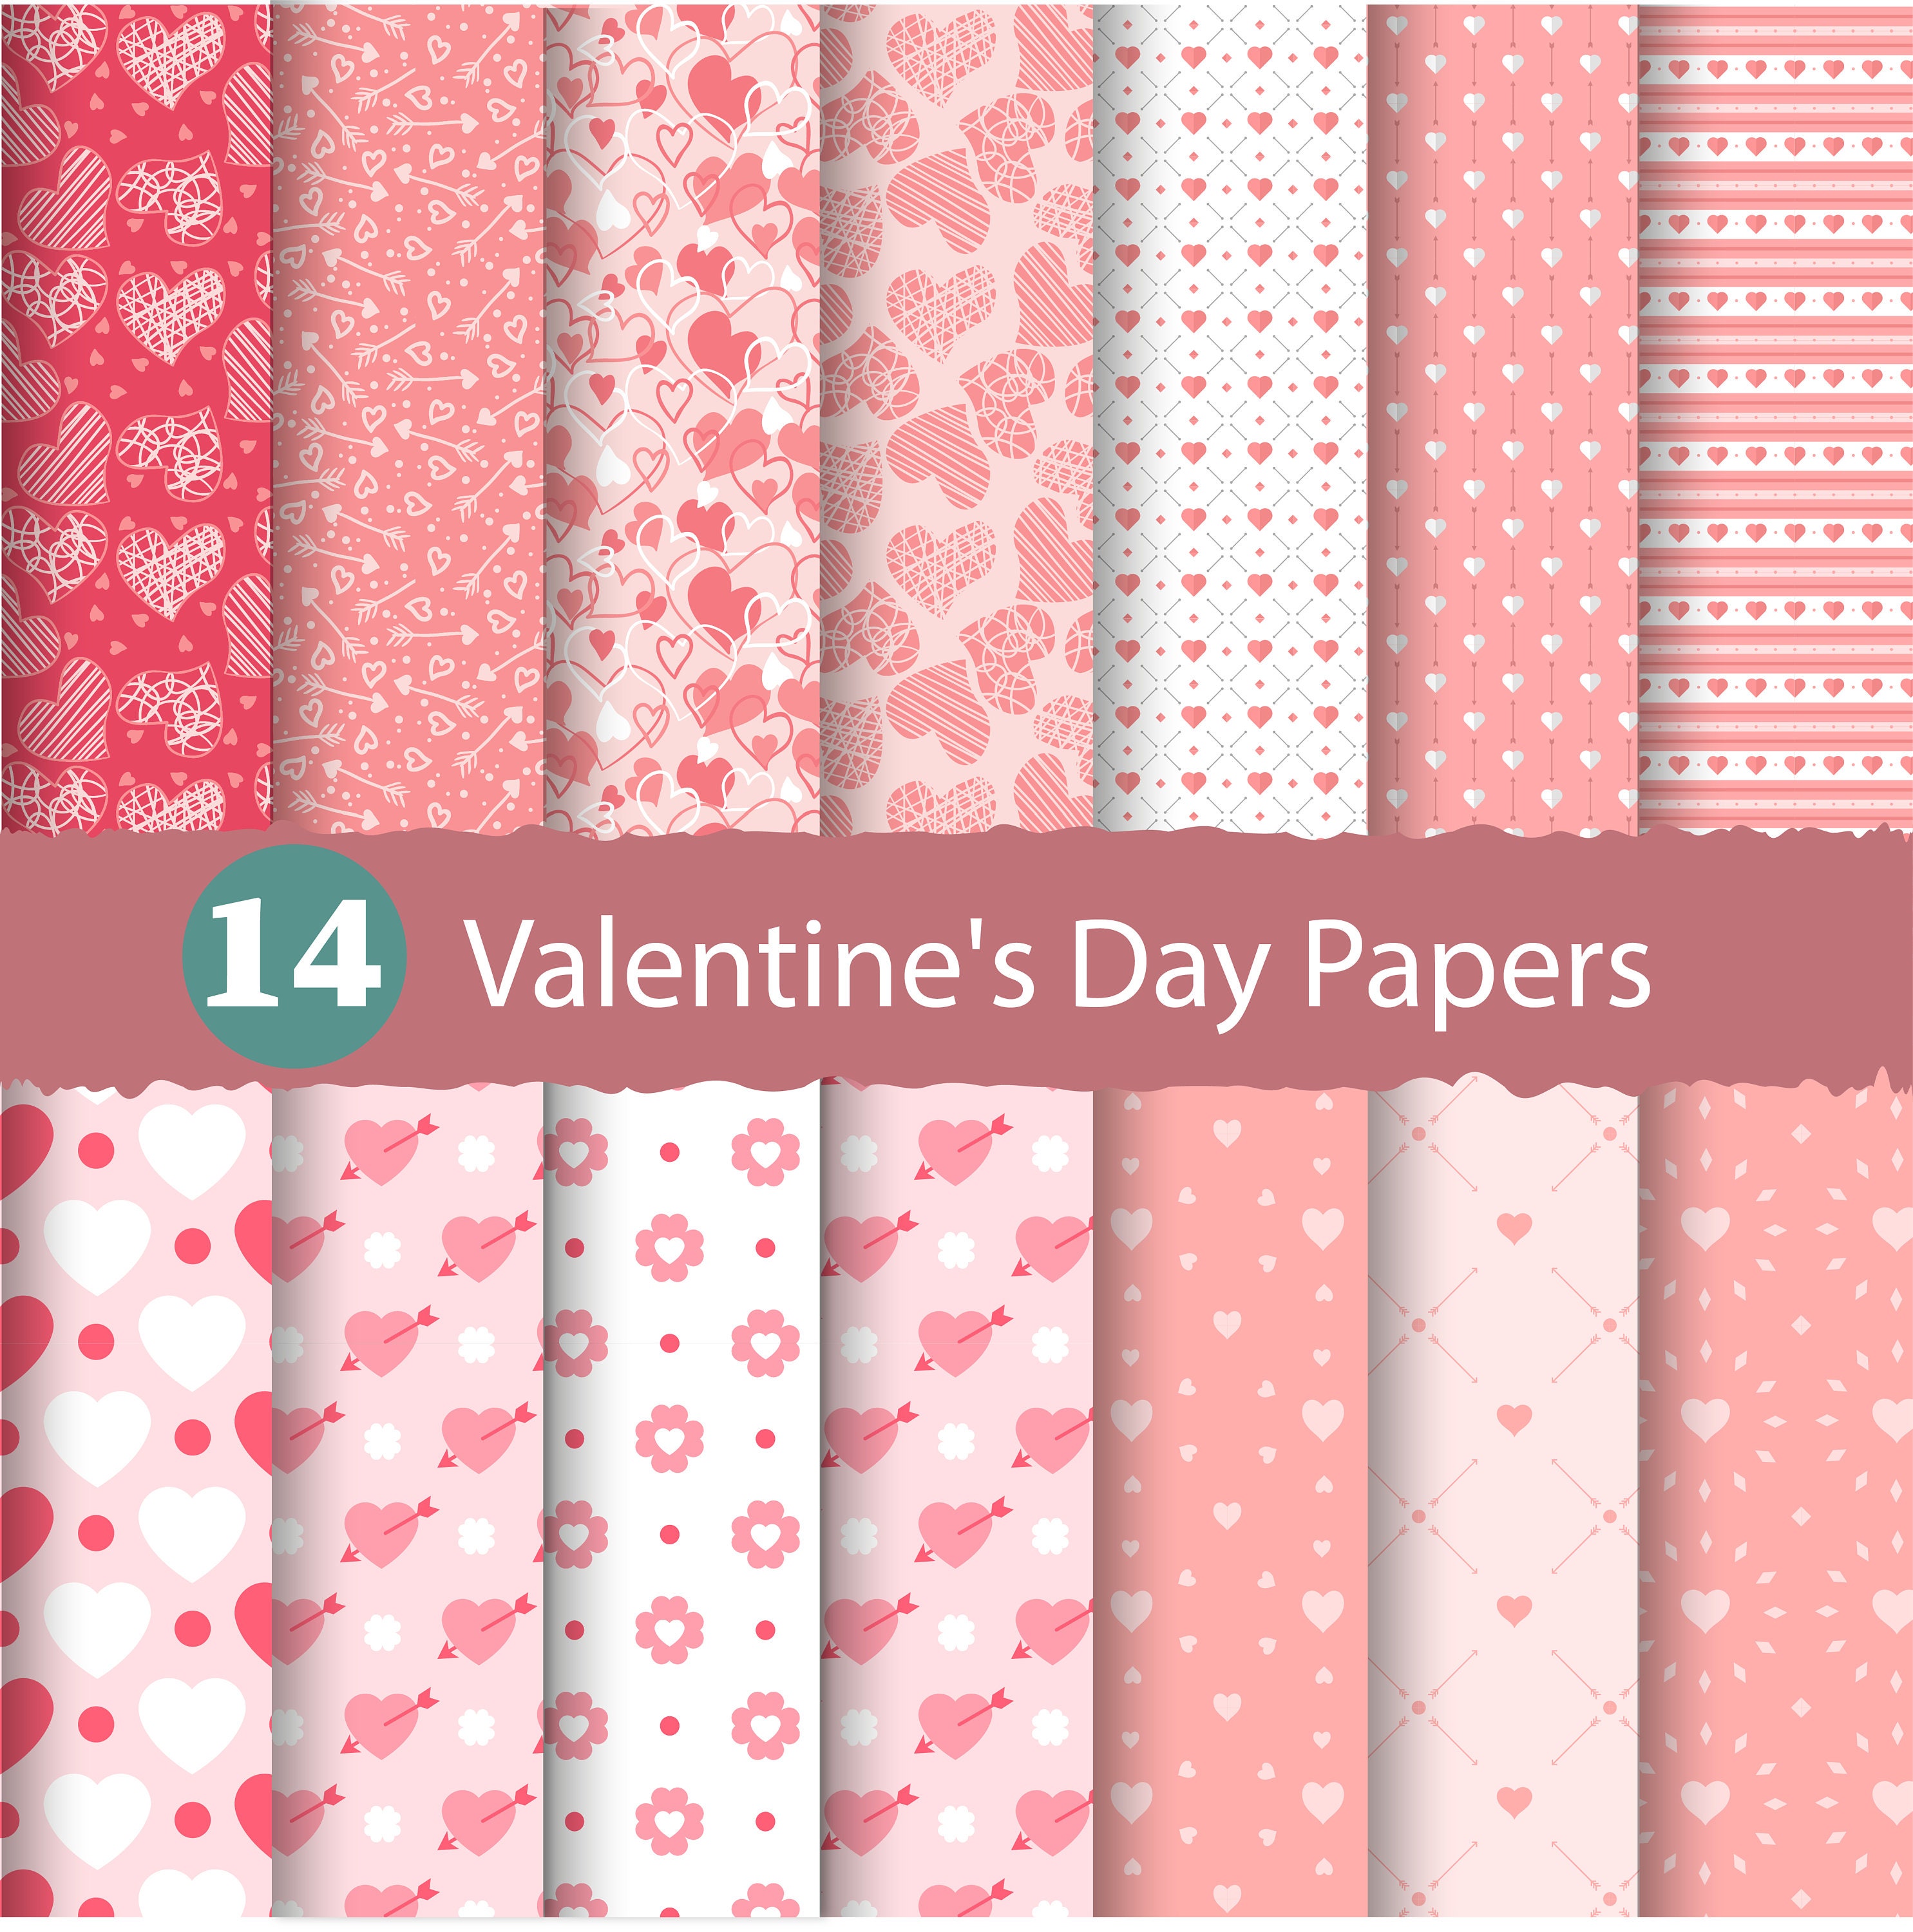 Valentine Digital Paper Pack, Valentine Scrapbook Paper, Patterned Digital  Papers, Valentine Patterns, DIY Valentine Party, P457 